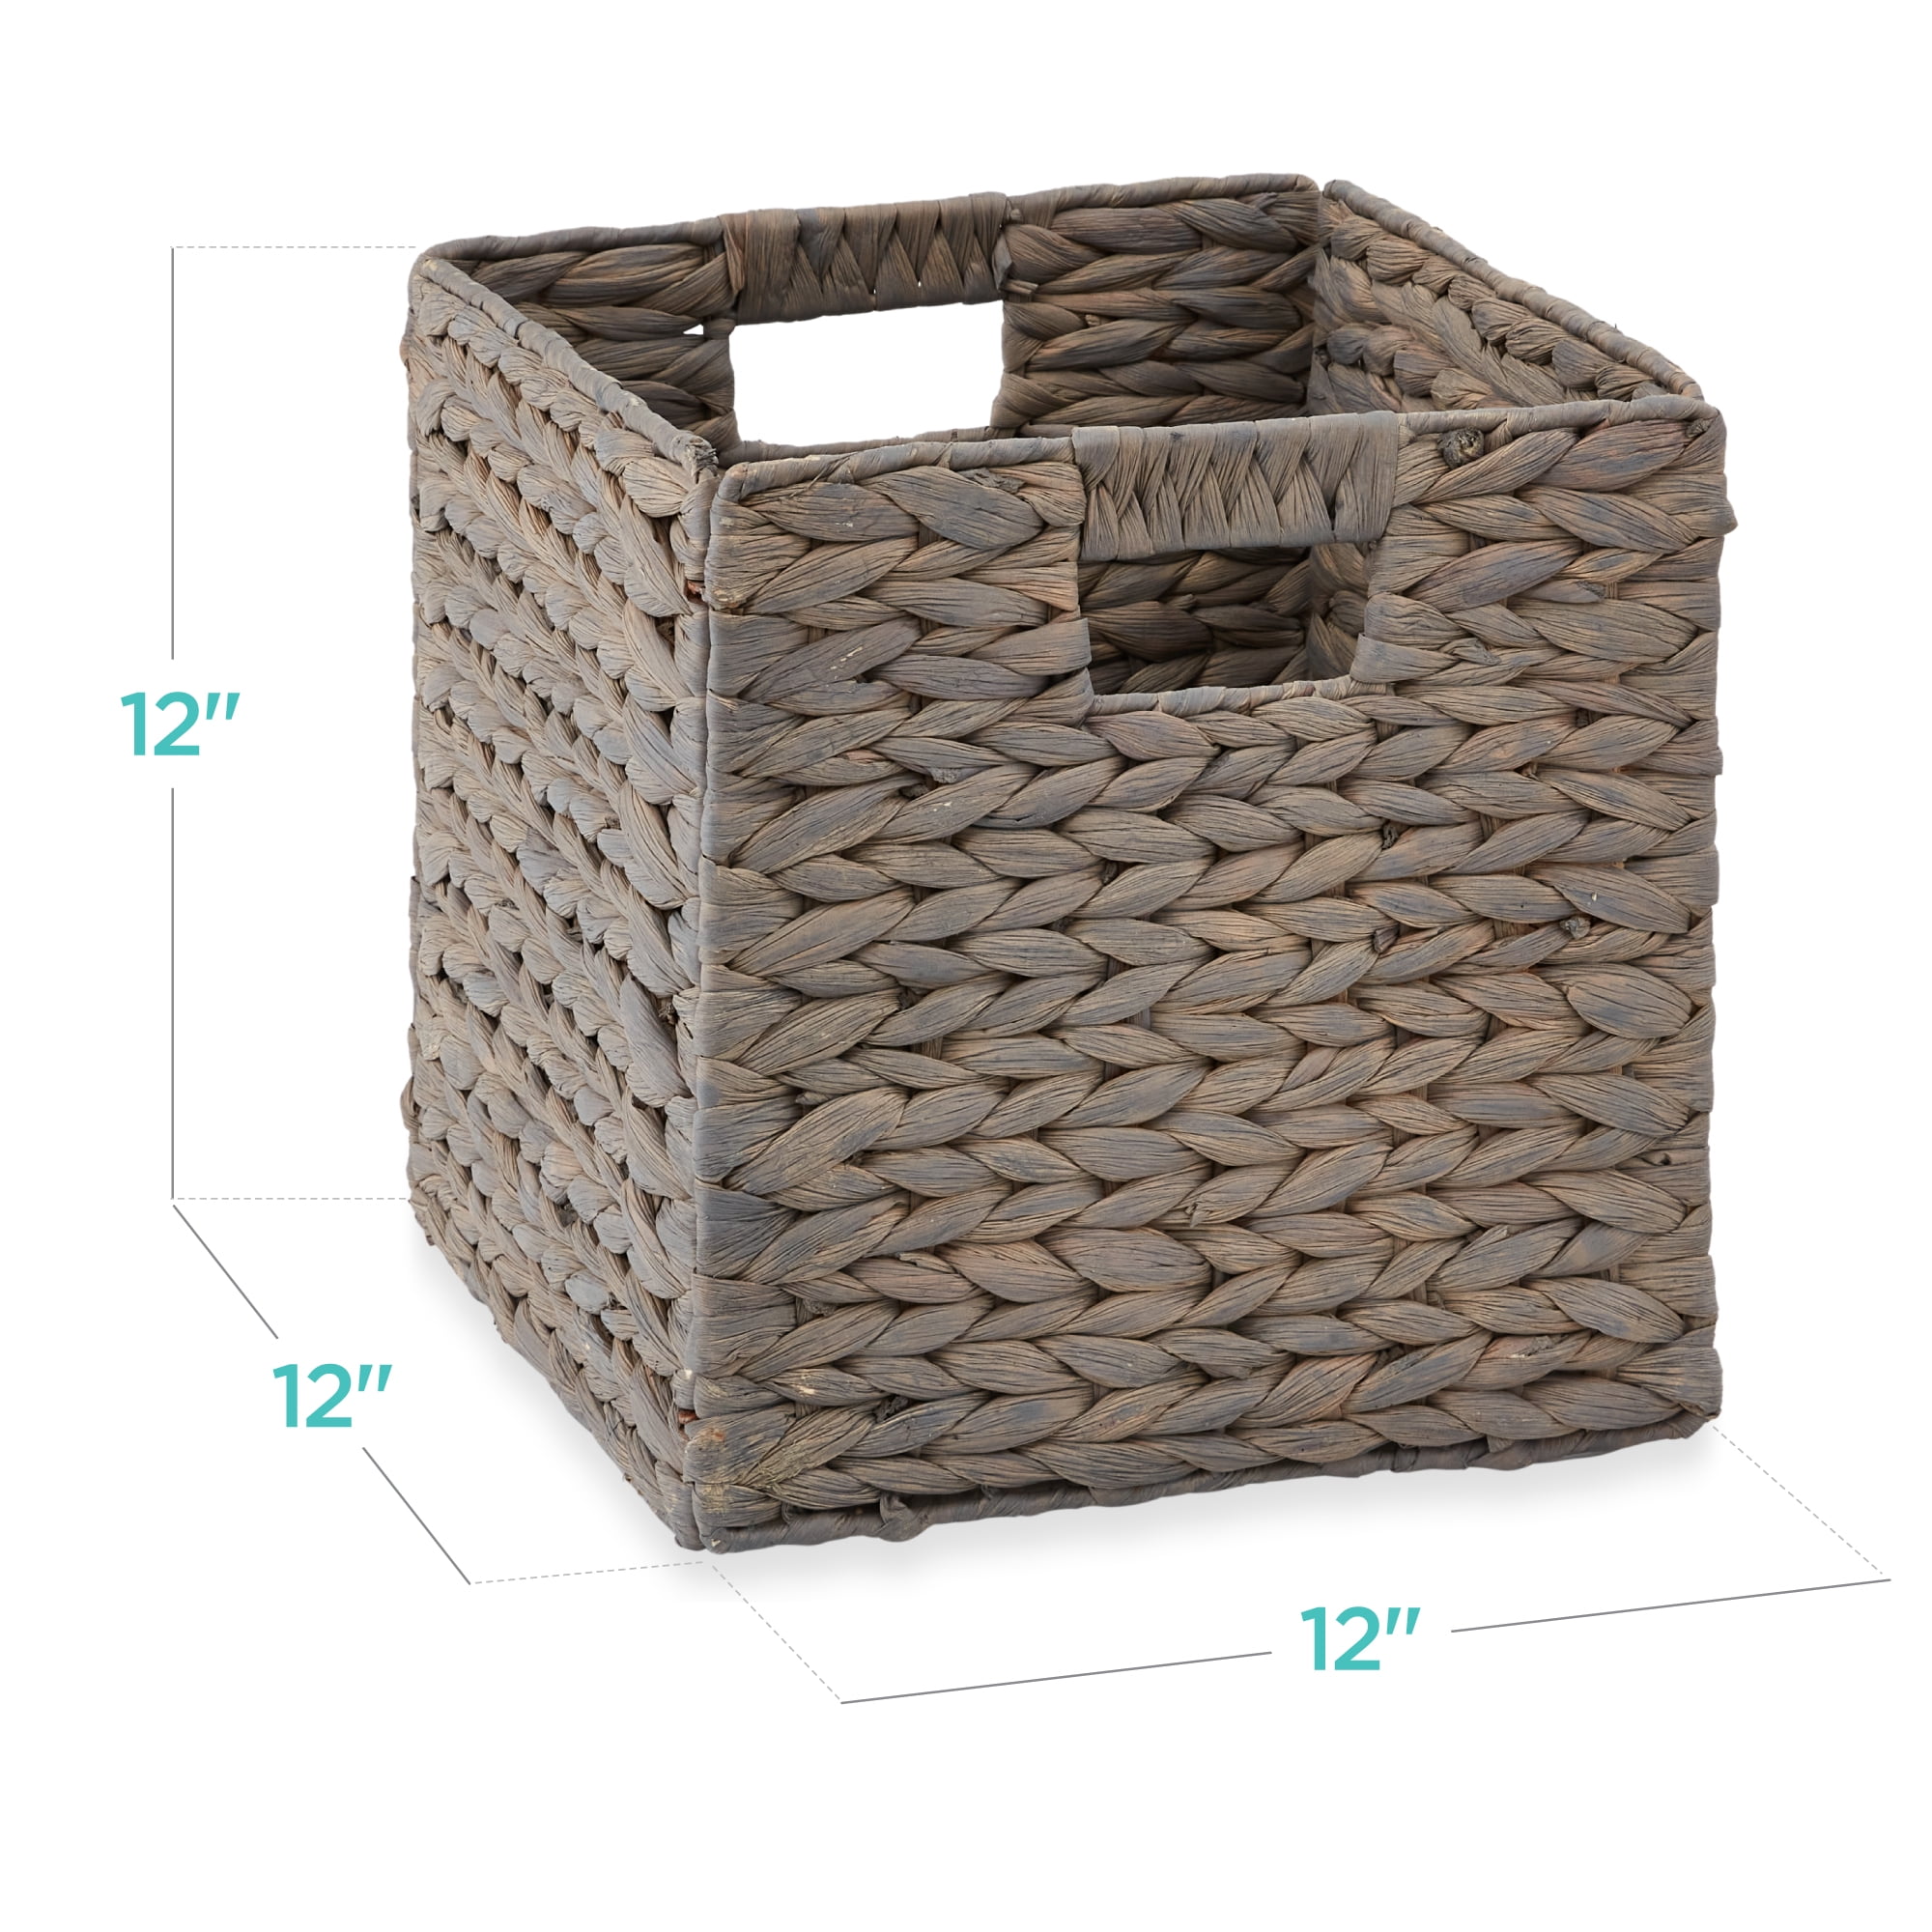 12 Large Storage Baskets for Bedding 2020